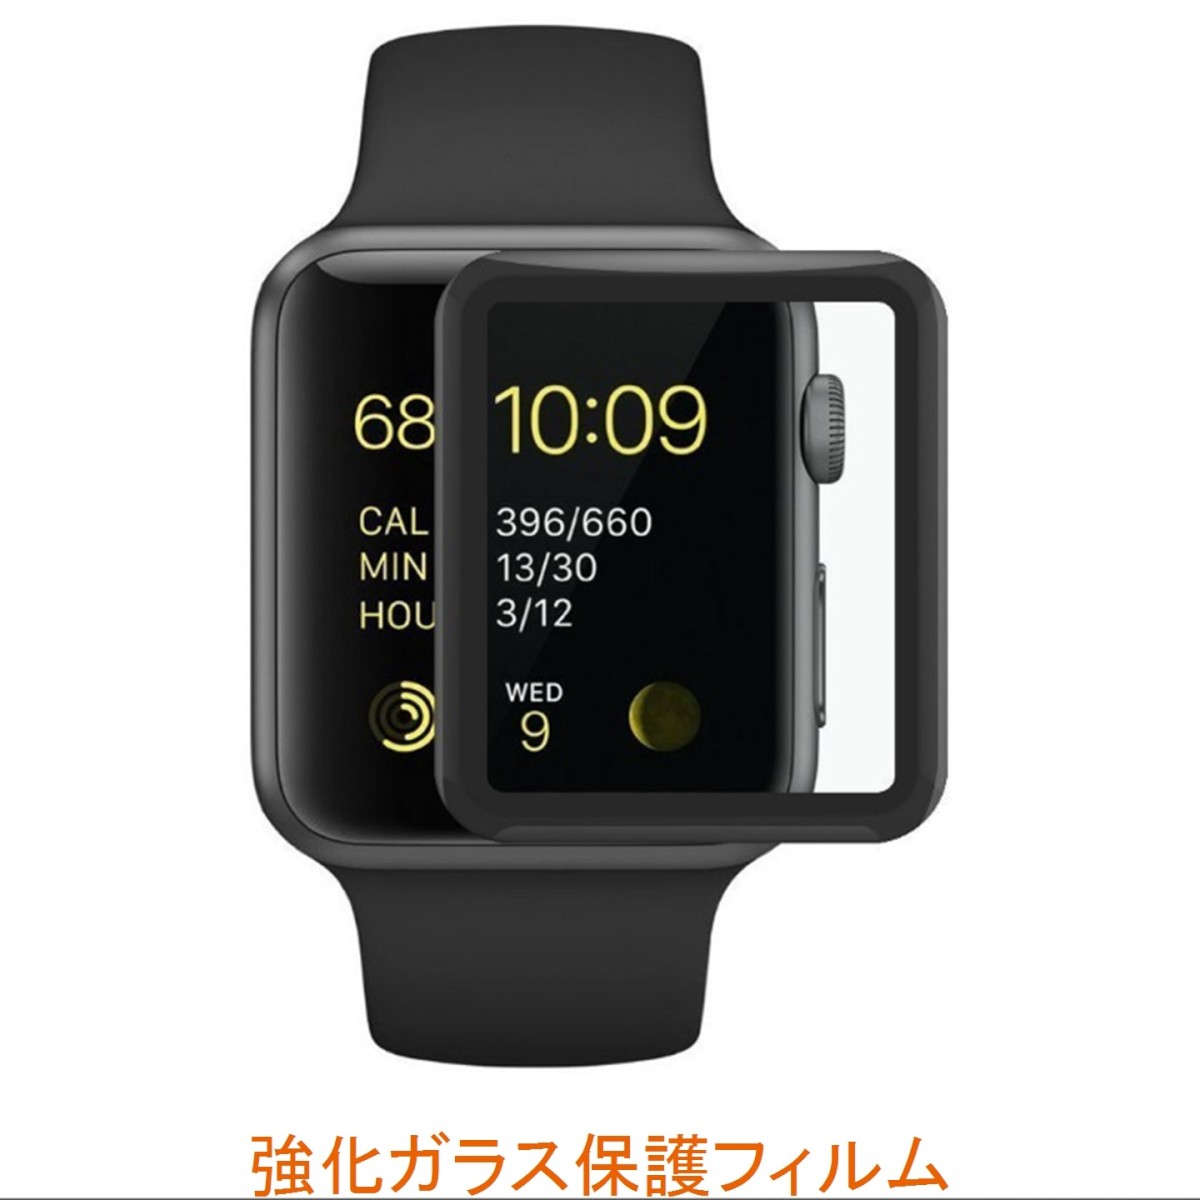 Apple Watch 38mm 9H 0.26mm S Sʕی 3DȖʃJo[ KX tیtB 2.5D